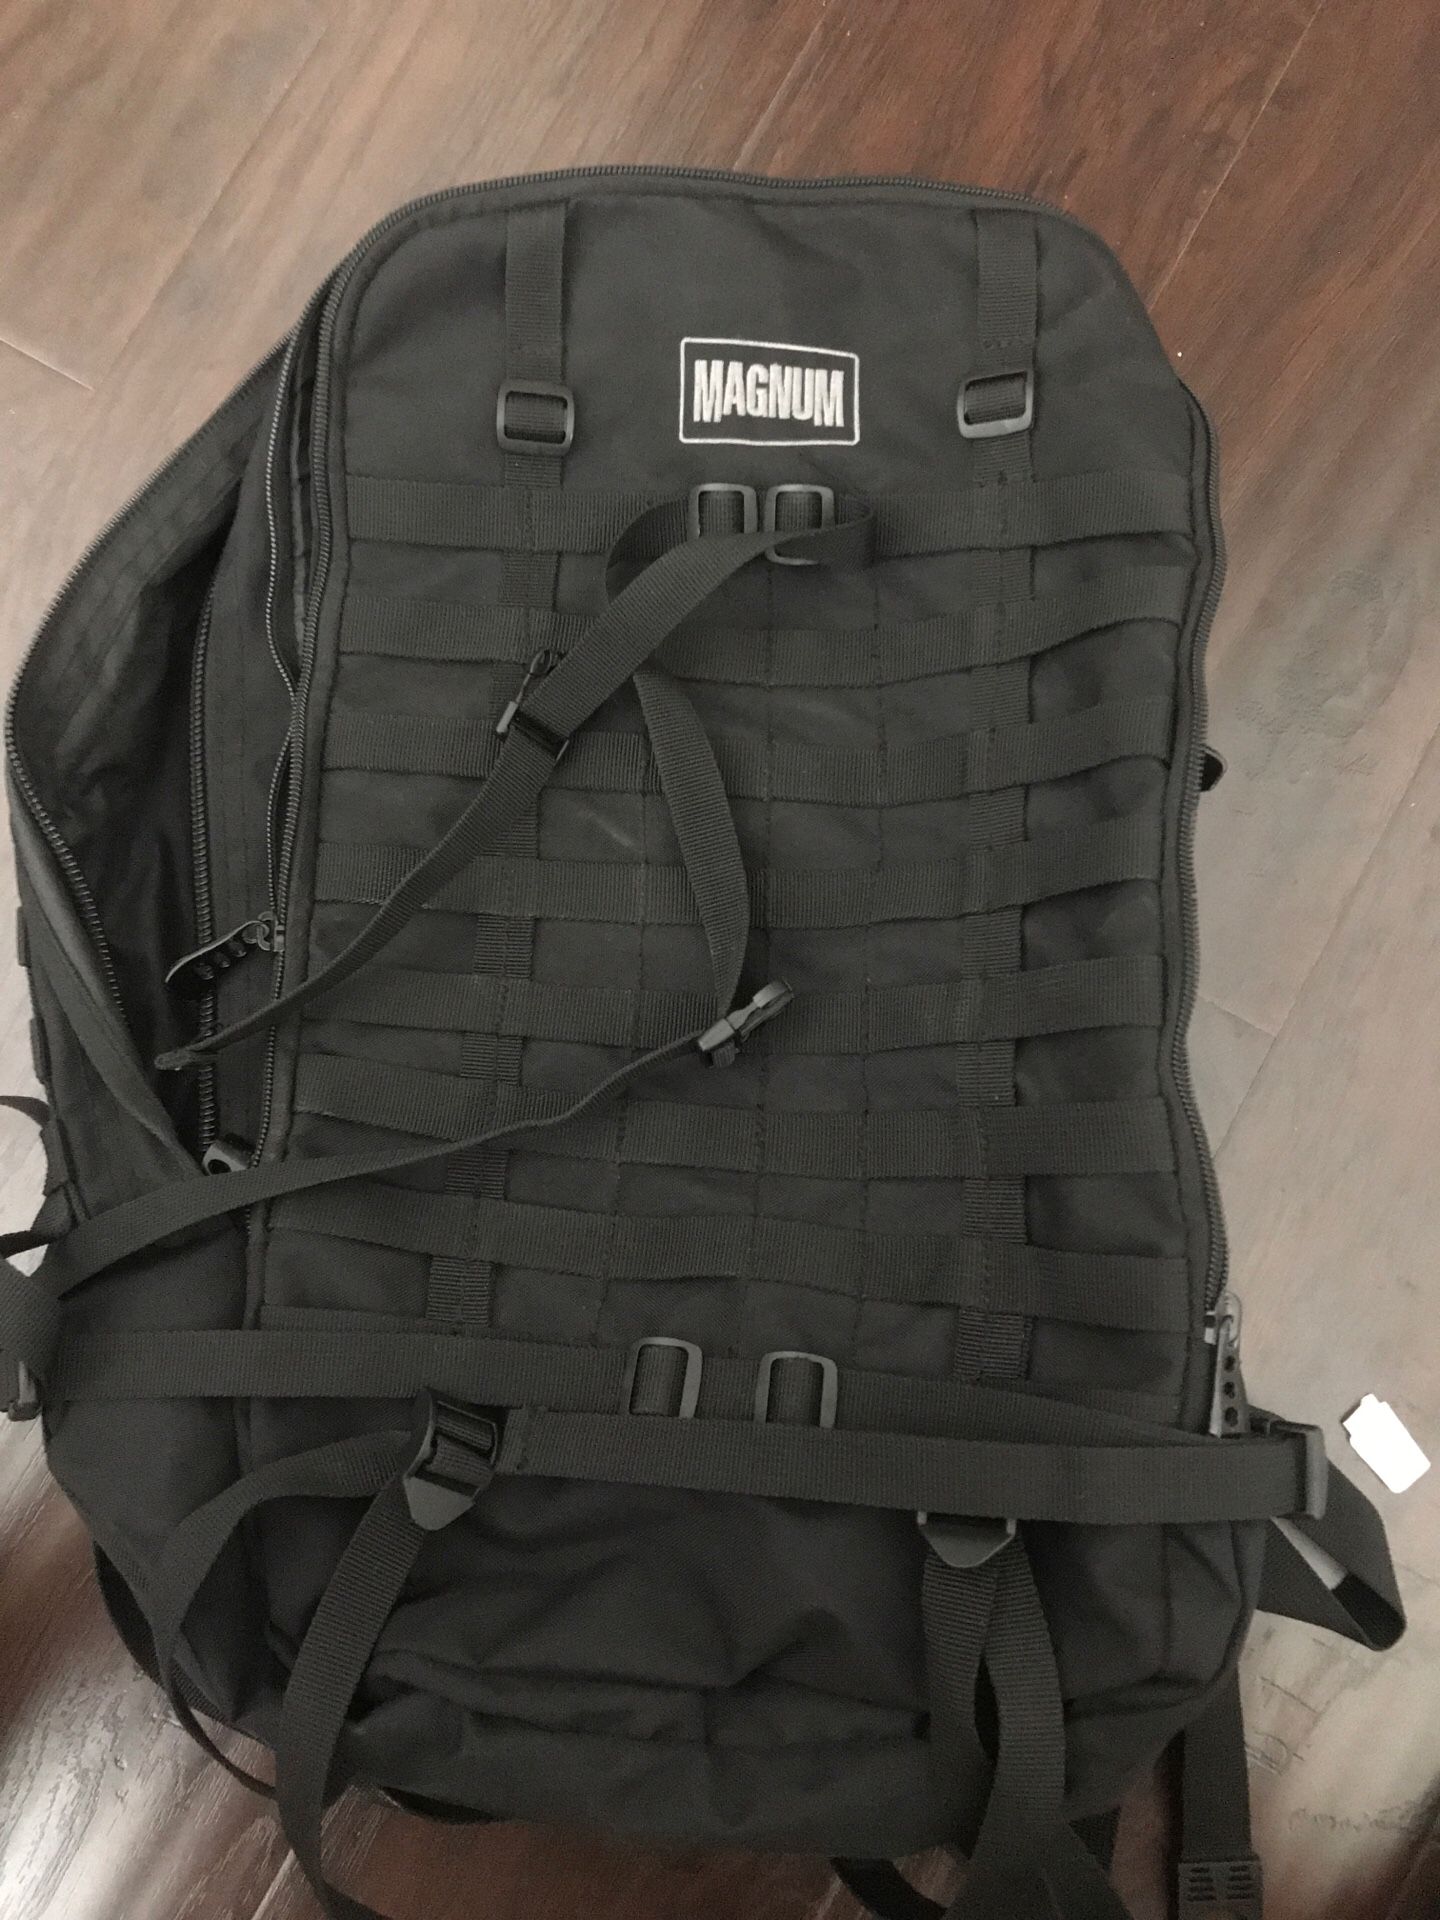 Magnum backpack